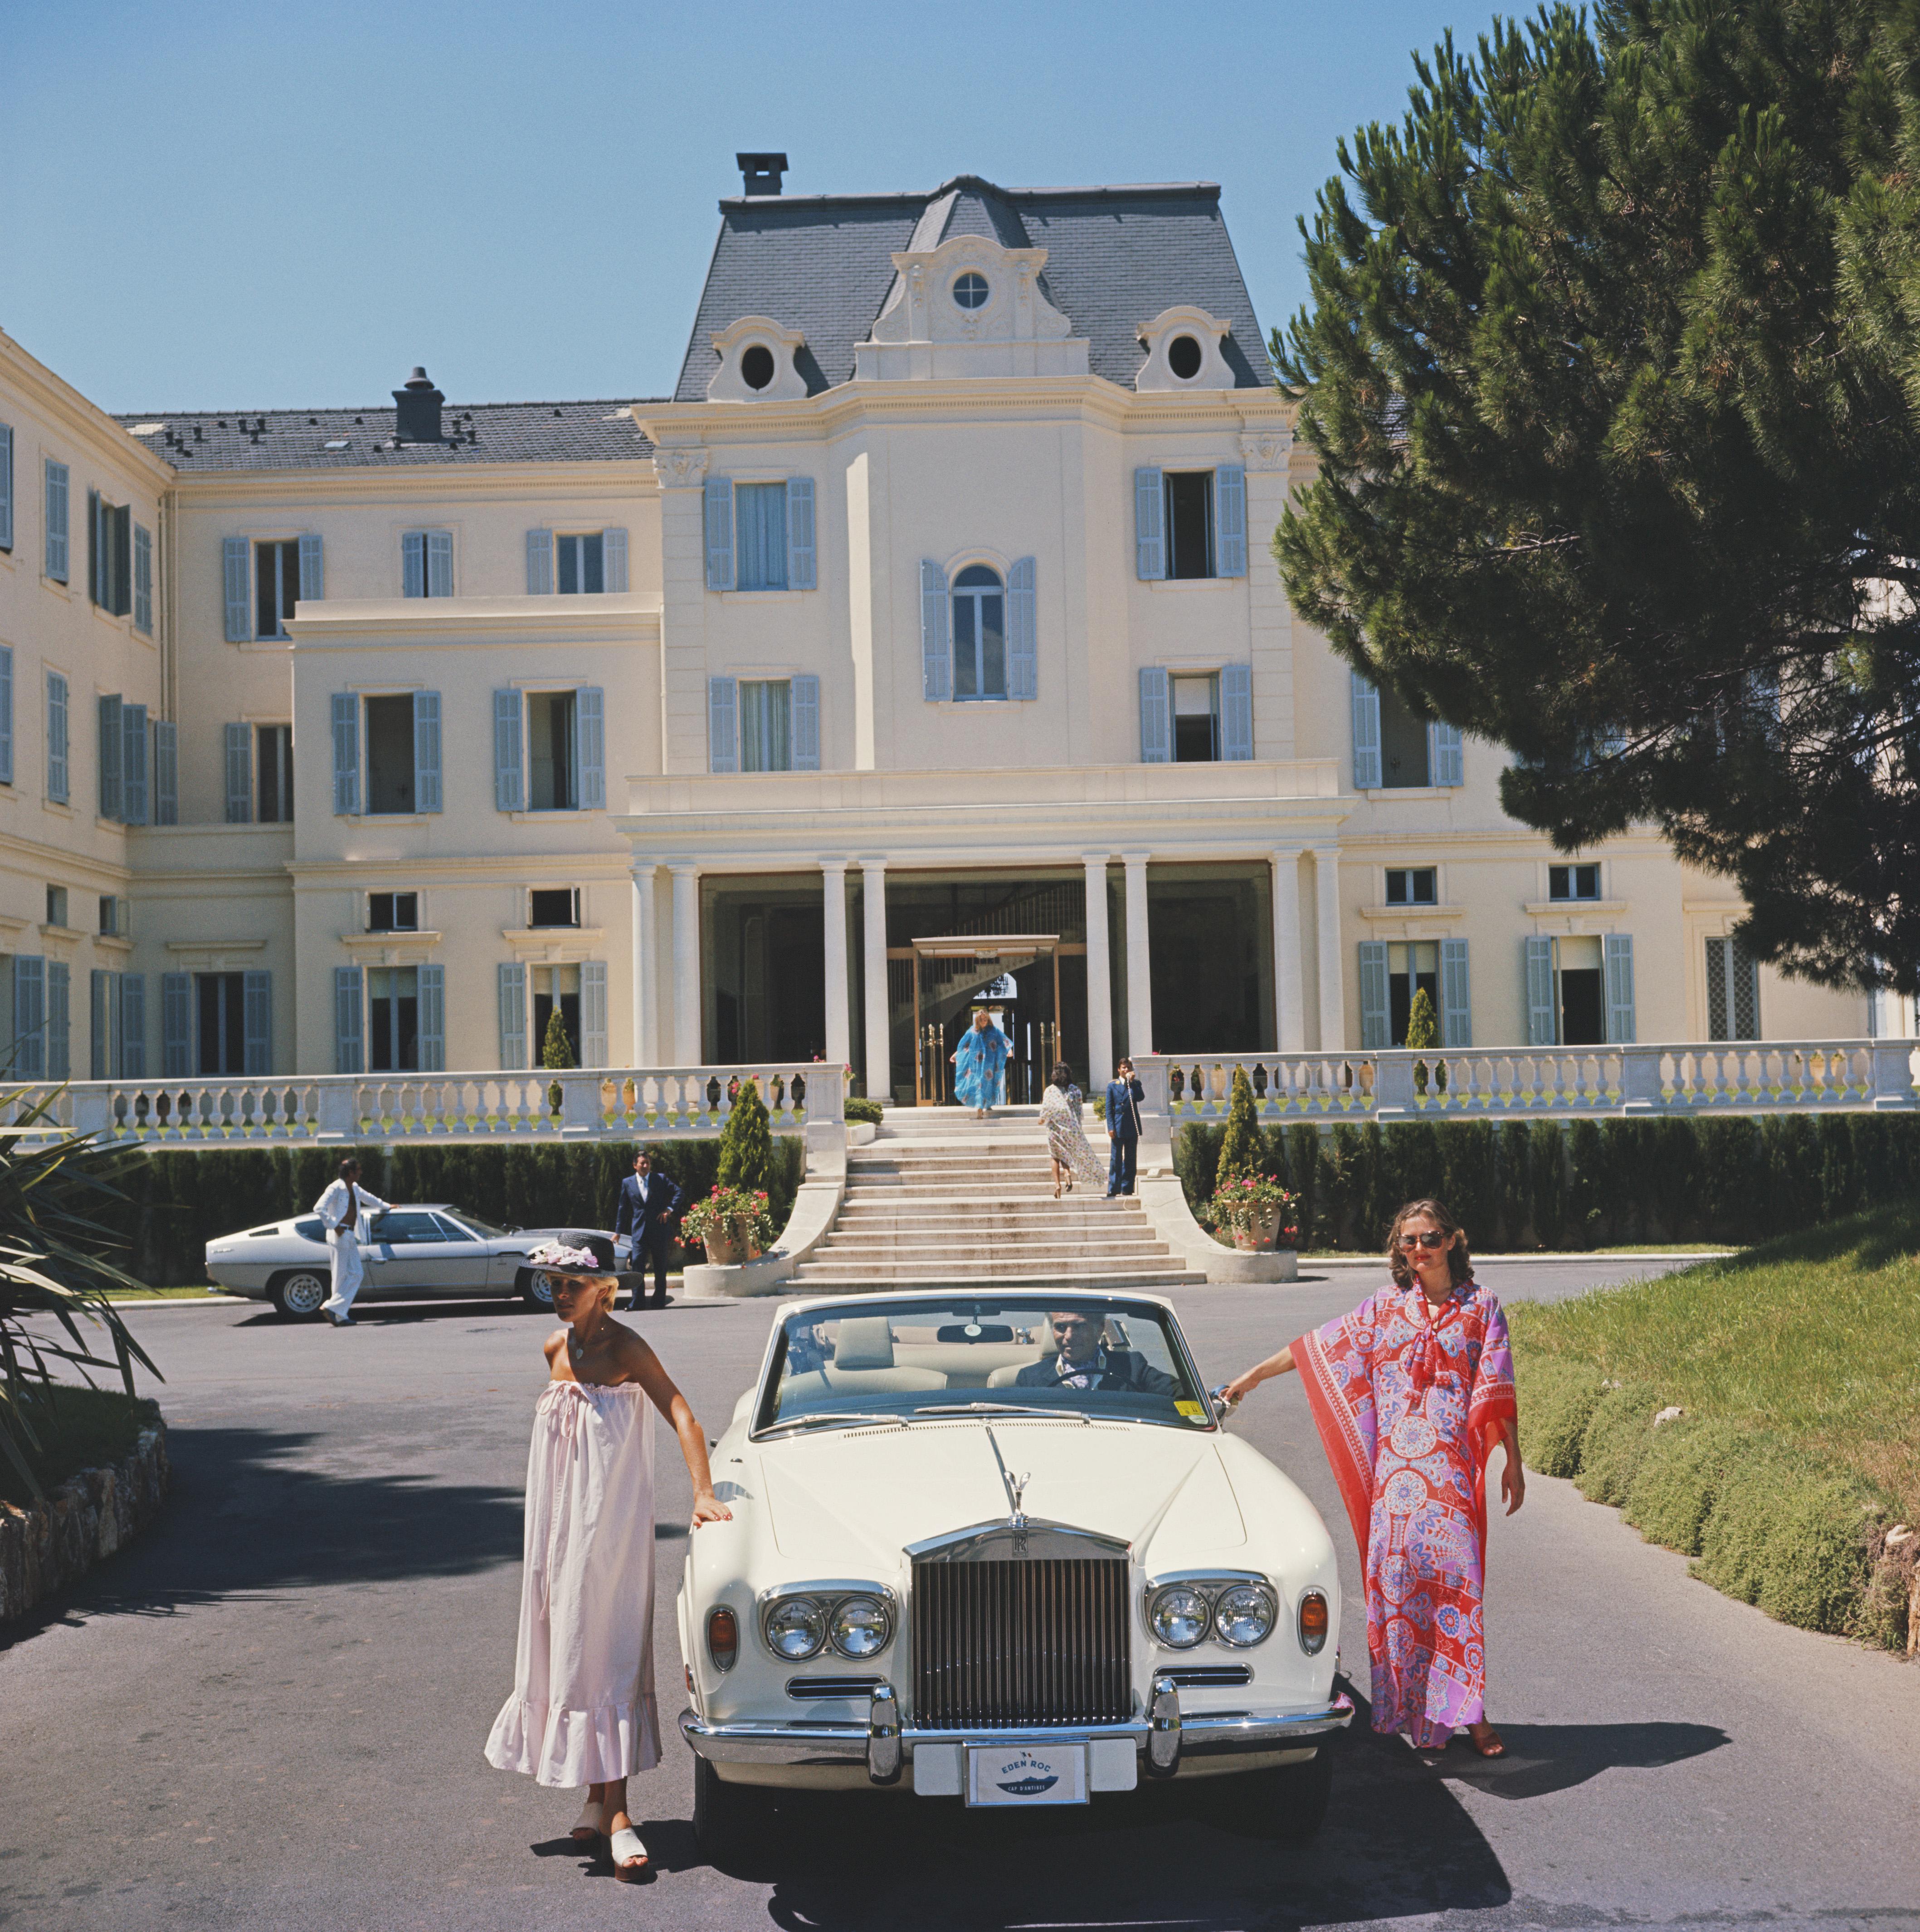 hotel du Cap Eden-Roc' Slim Aarons - Limitierter Nachlassstempel-Druck

Gäste stehen vor einem weißen Rolls-Royce Cabriolet im Hotel du Cap Eden-Roc, Antibes, Frankreich, August 1976. 

Hergestellt aus der Originalfolie
Mitgeliefertes